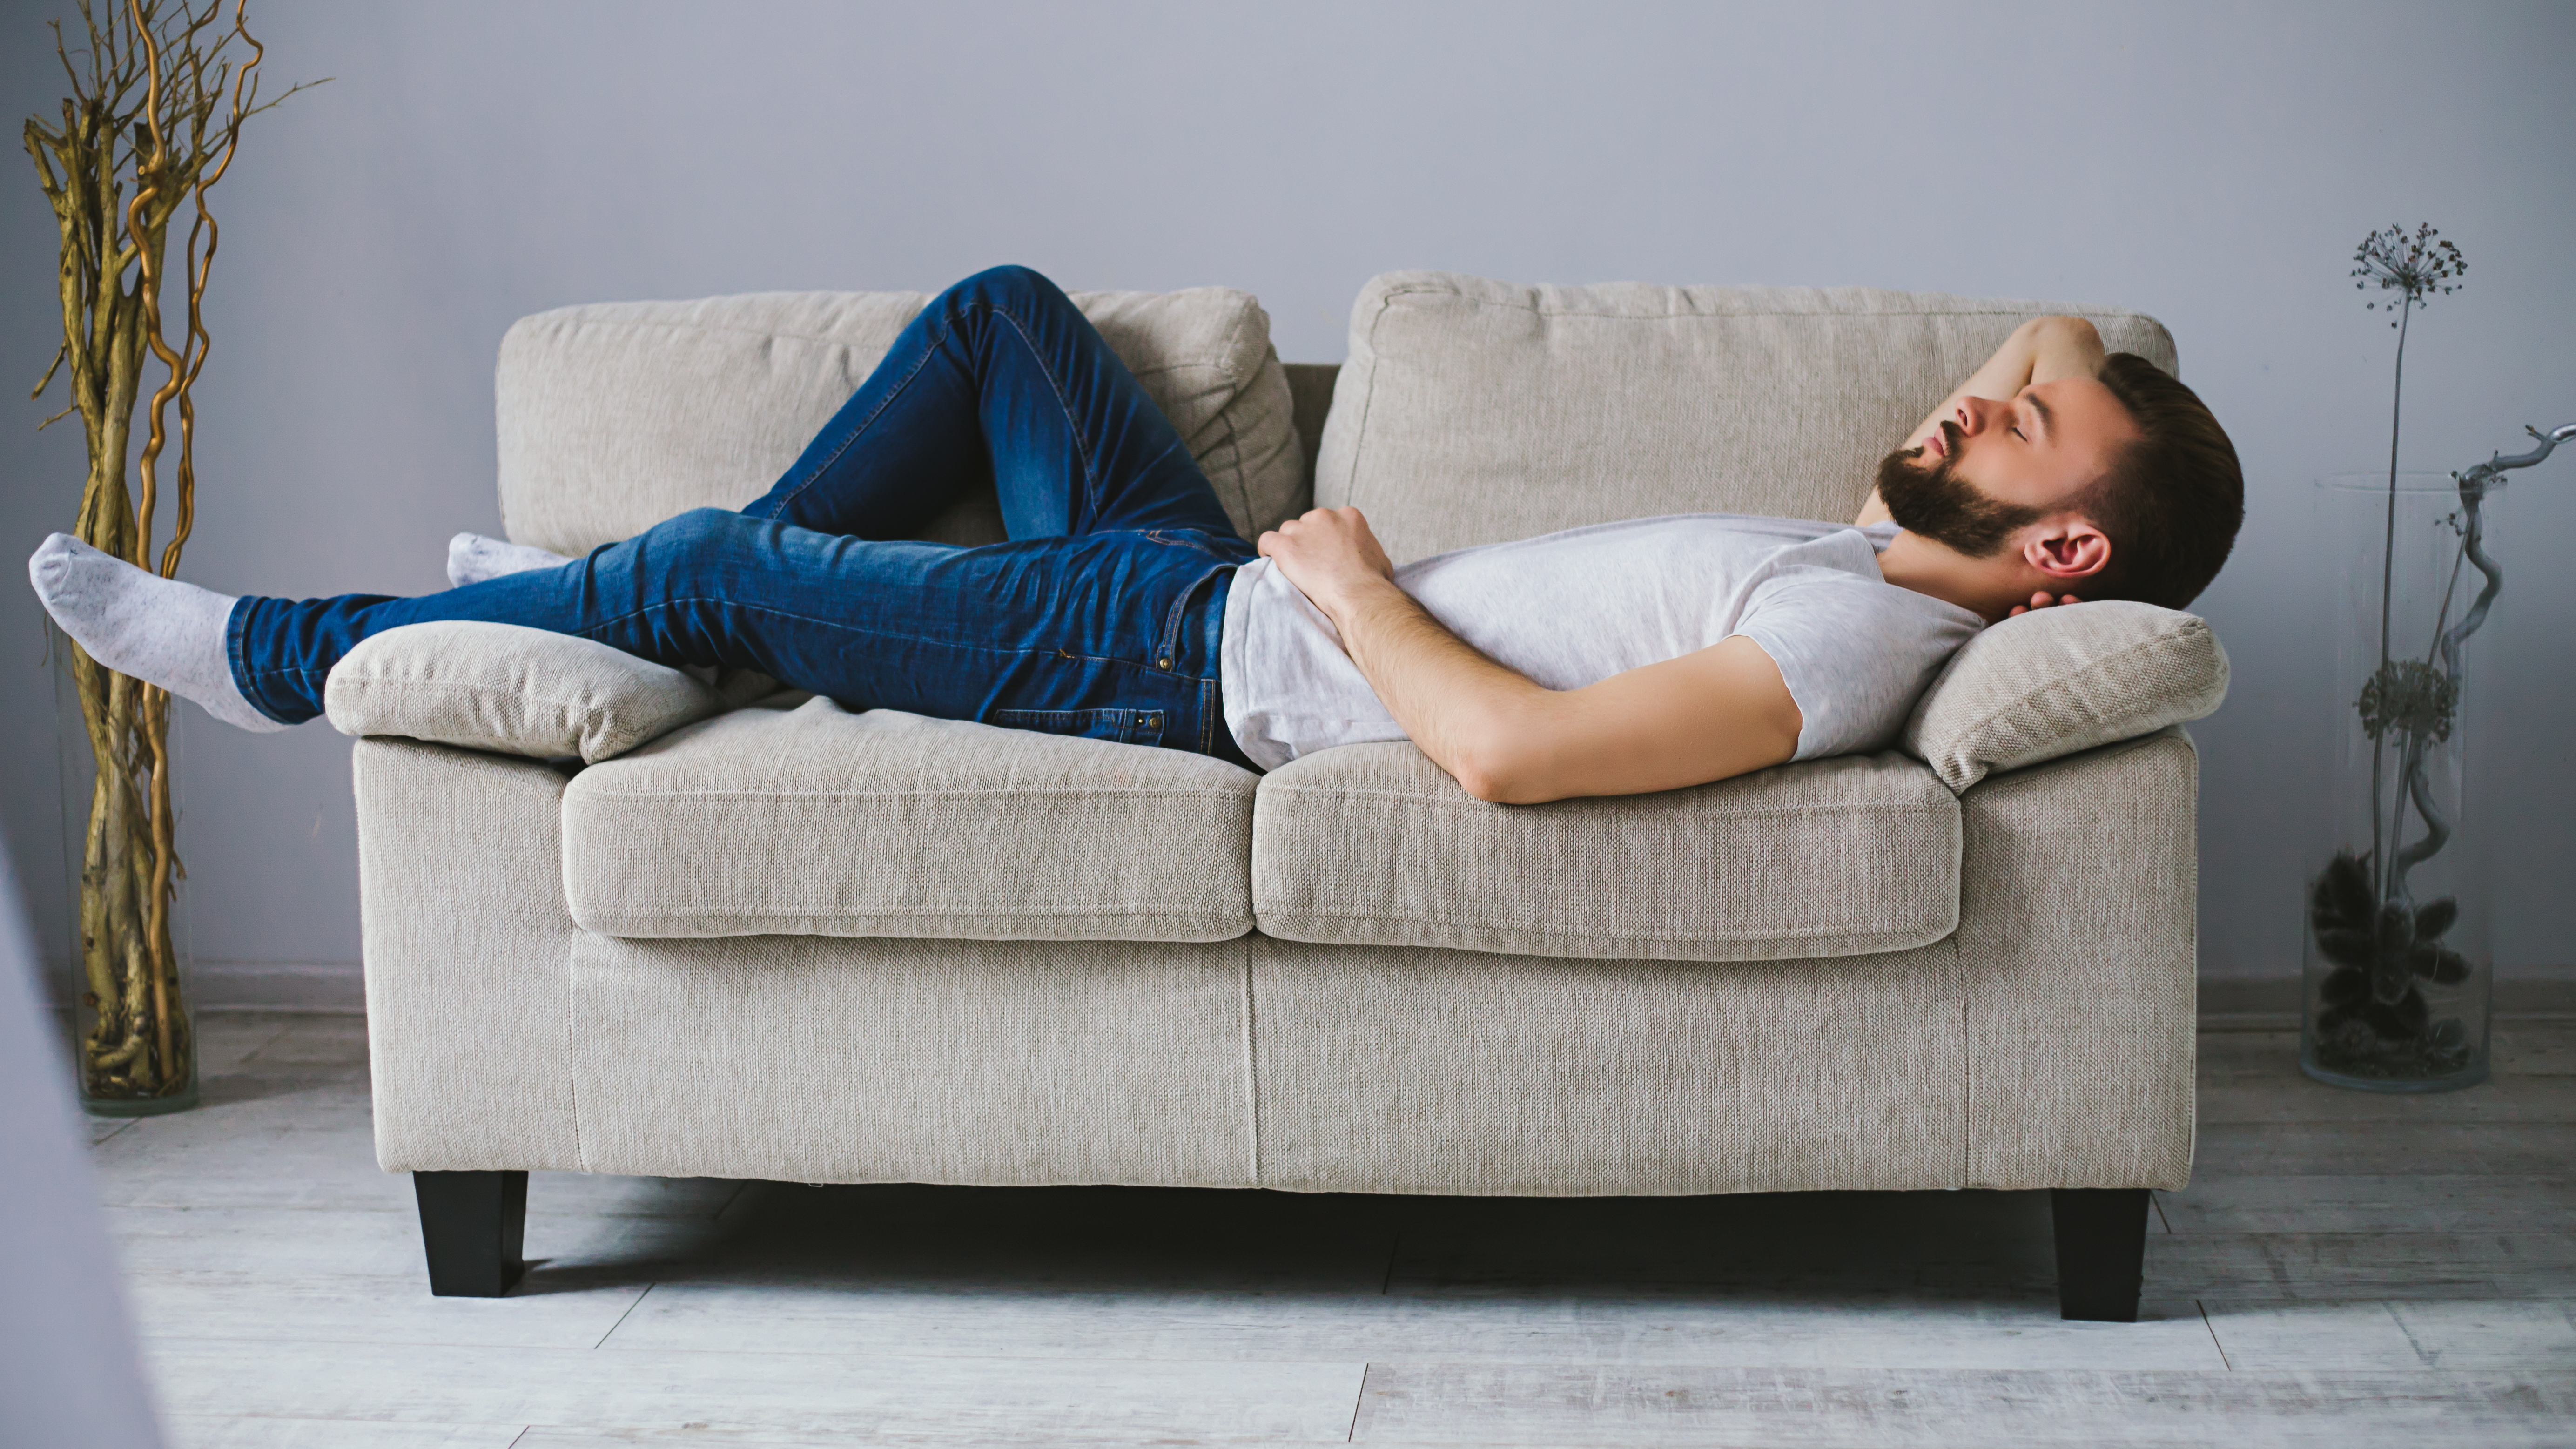 Un homme dormant sur un canapé | Source : Shutterstock